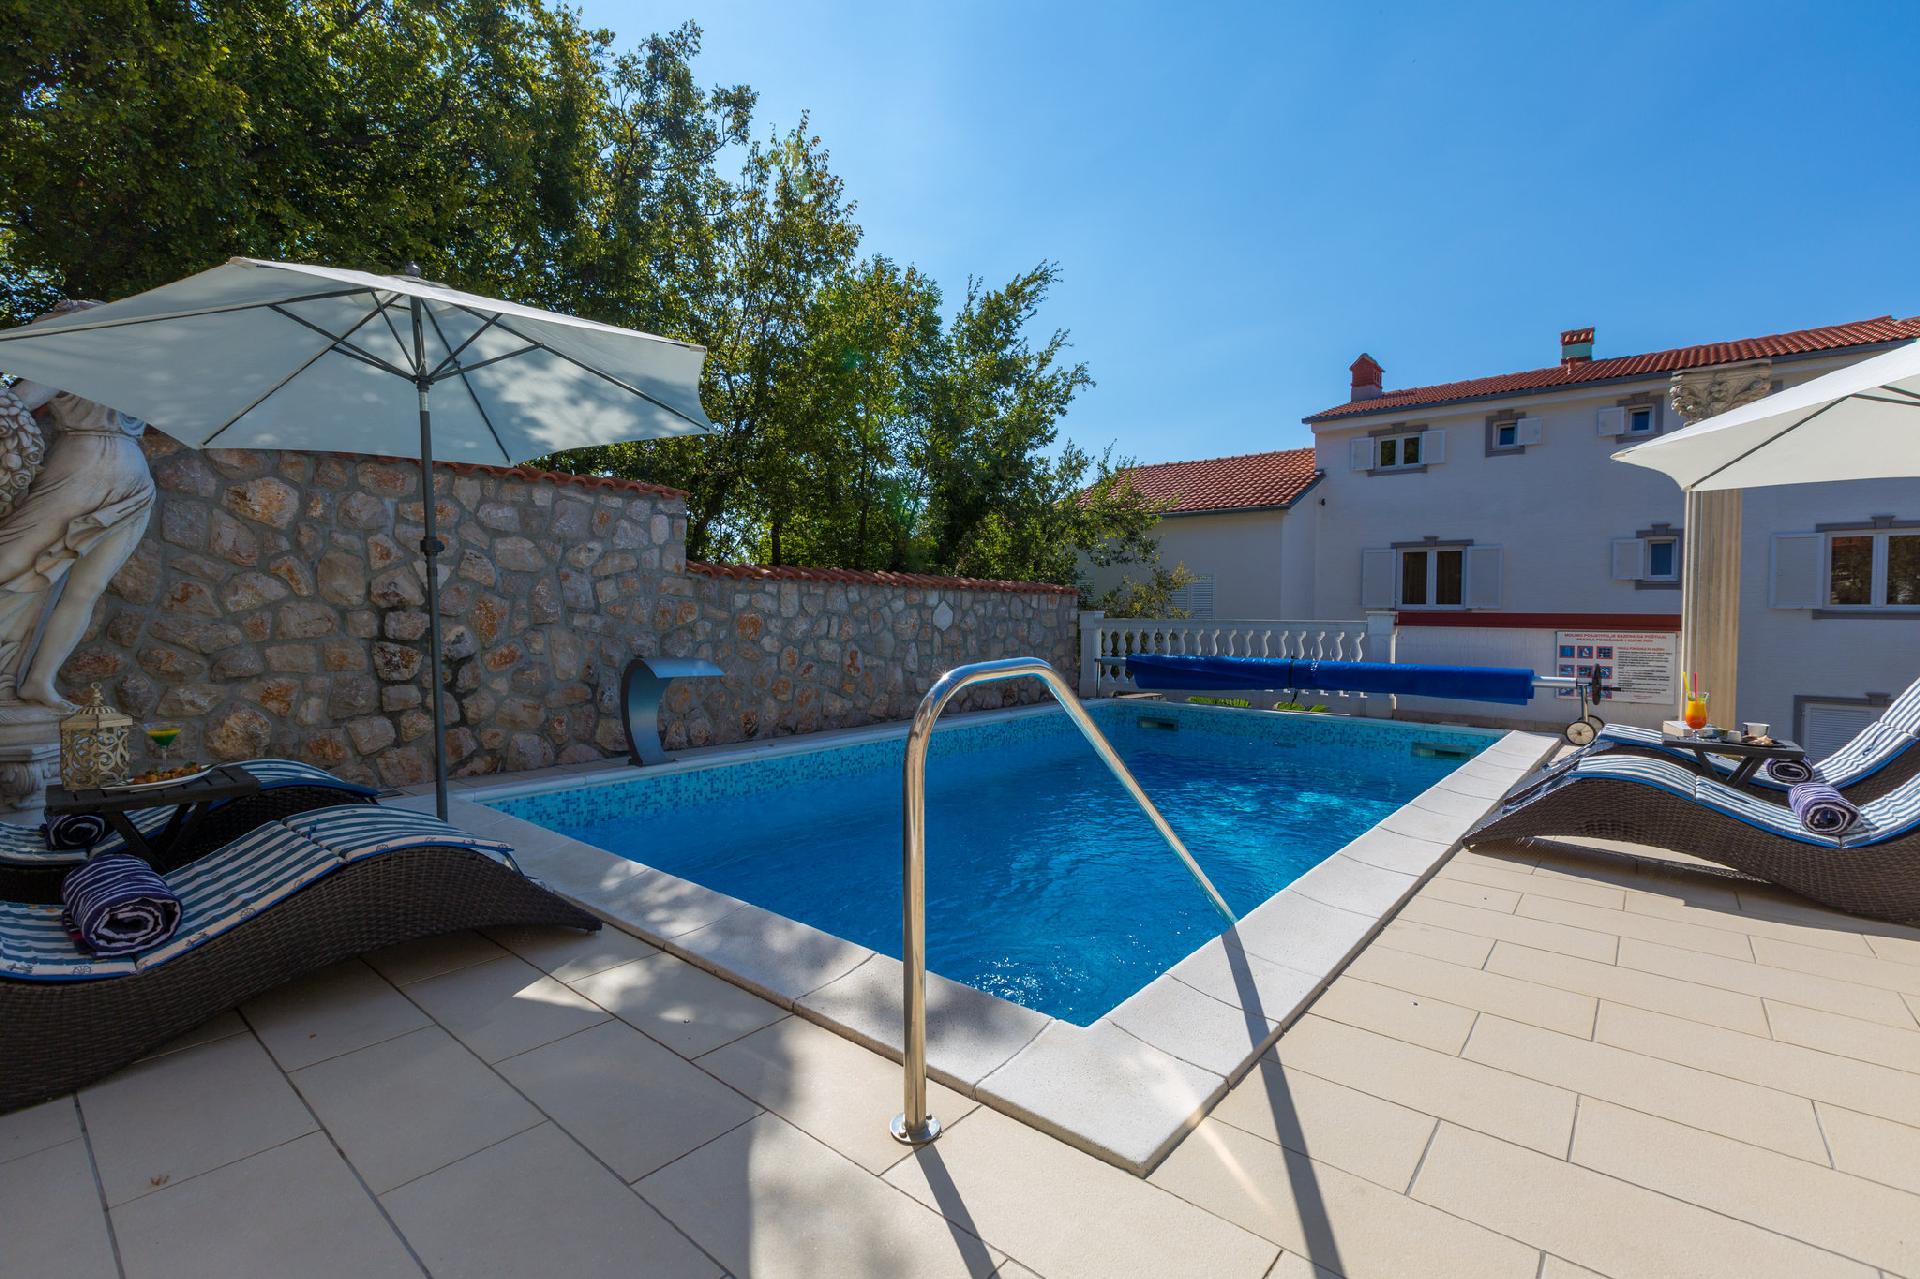 Ferienwohnung für 5 Personen ca. 90 m² i  in Kroatien